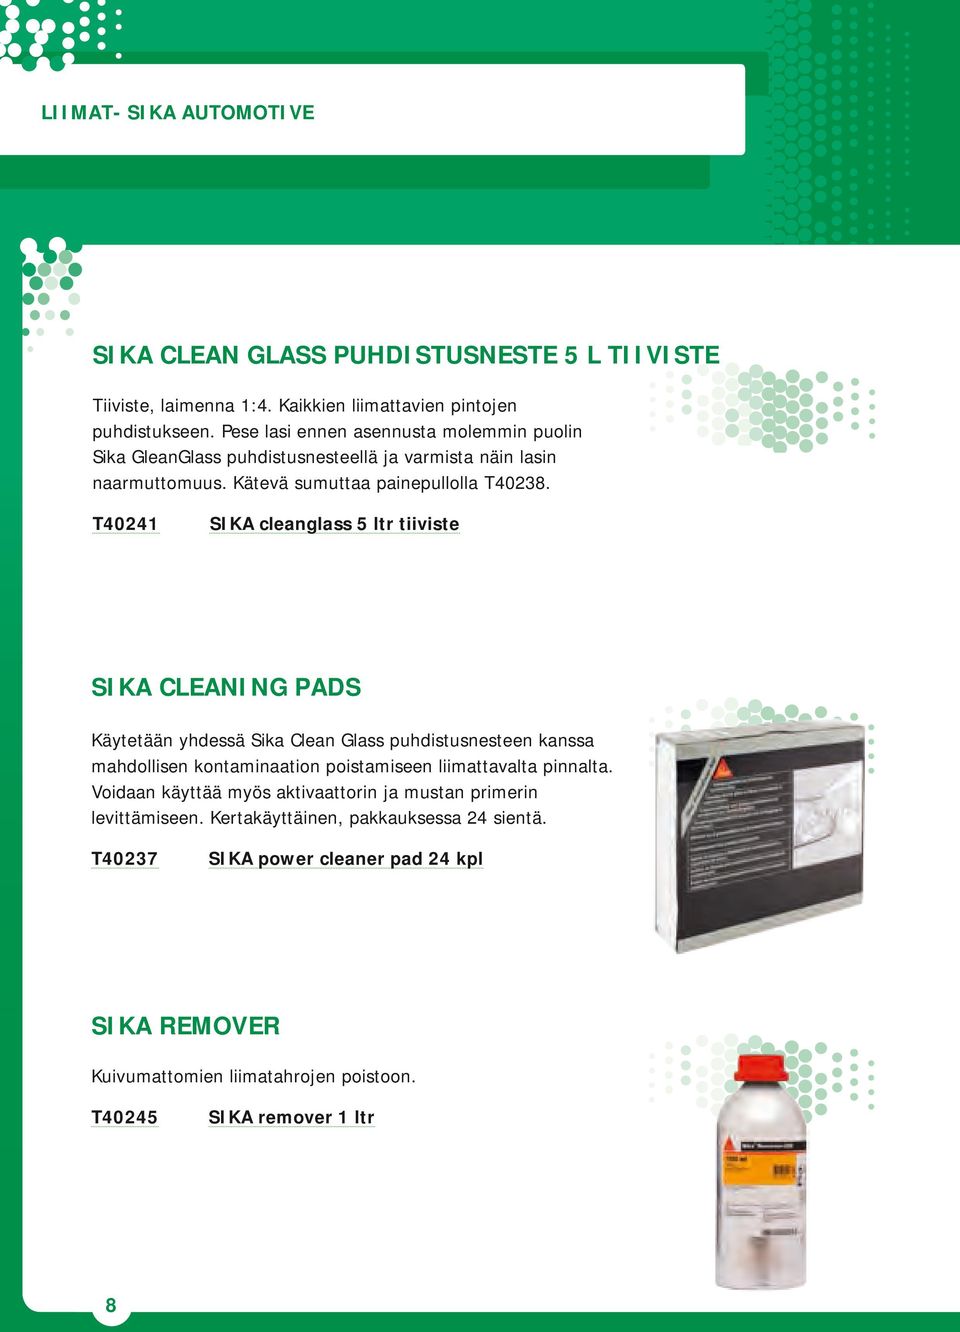 T40241 SIKA cleanglass 5 ltr tiiviste SIKA CLEANING PADS Käytetään yhdessä Sika Clean Glass puhdistusnesteen kanssa mahdollisen kontaminaation poistamiseen liimattavalta